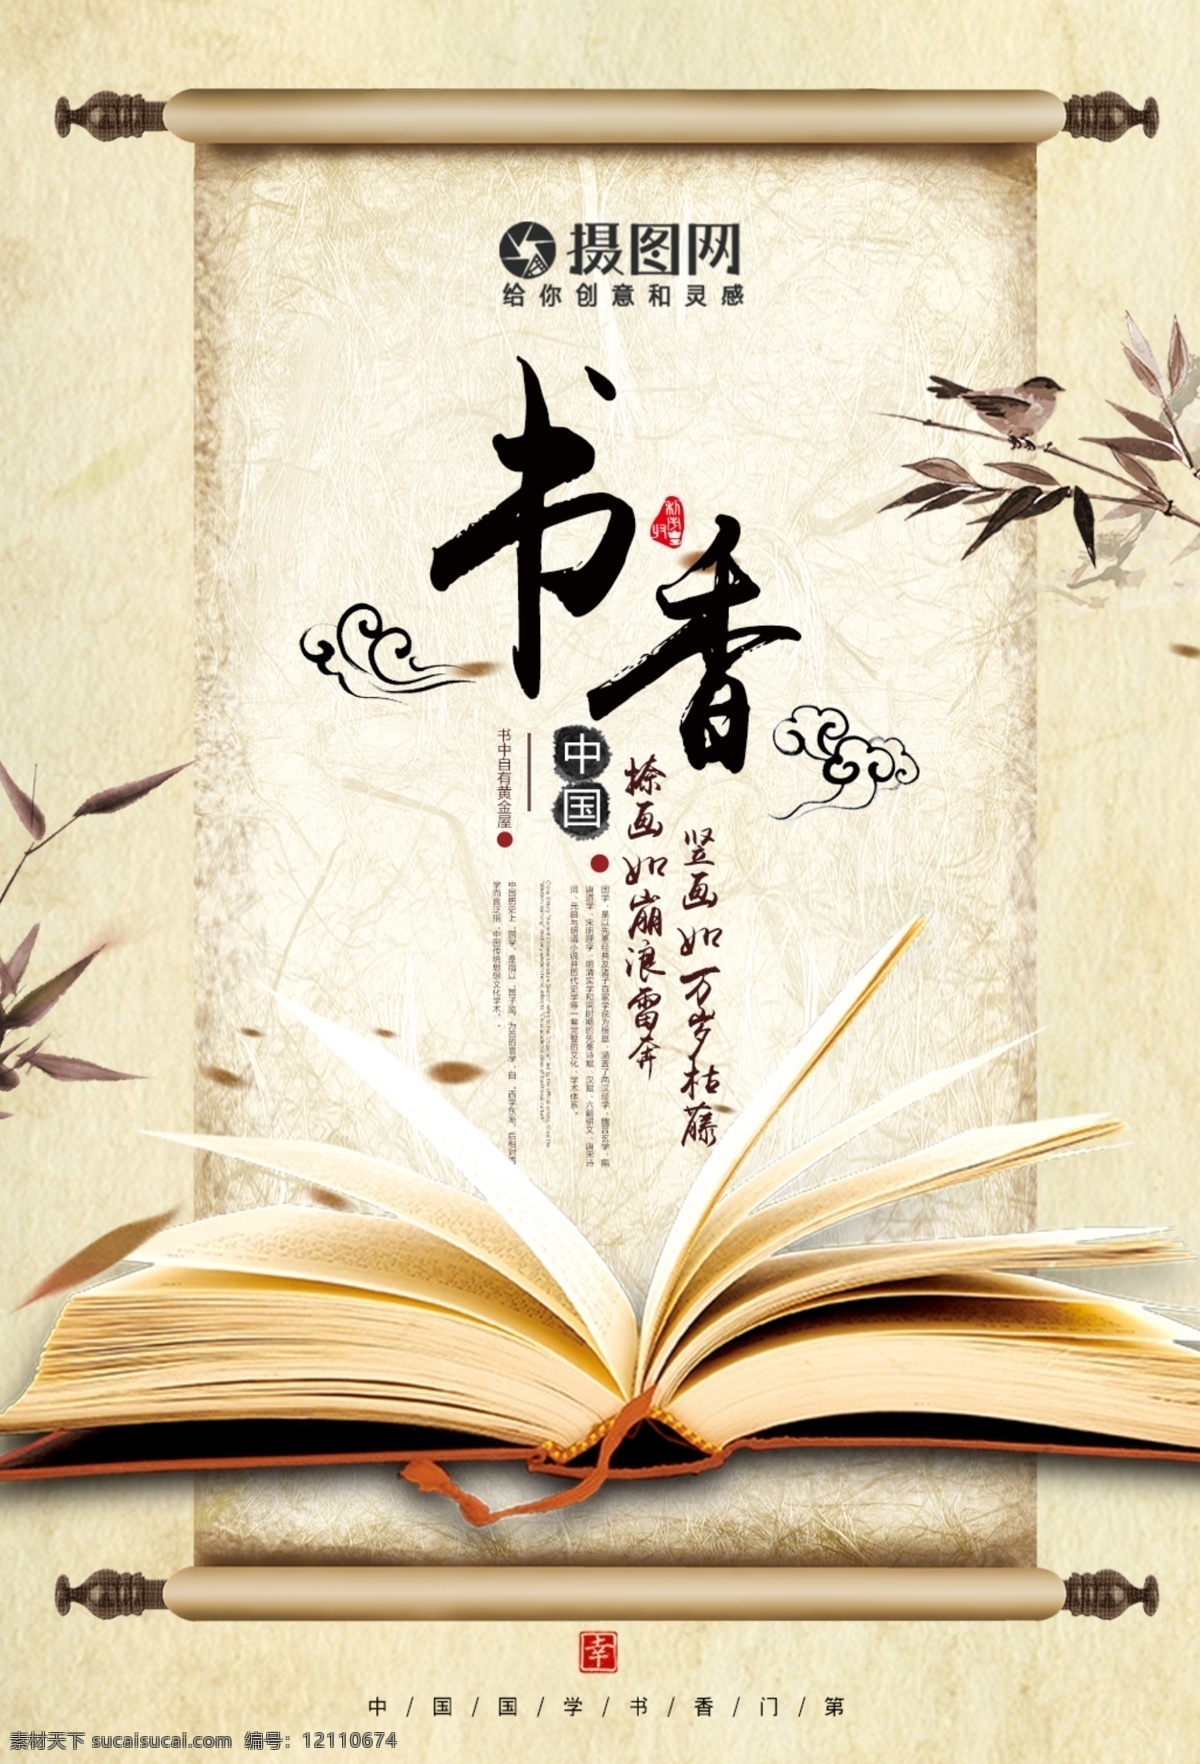 书香 中国 传统文化 海报 书 书堆 书本 书本书籍 书籍 打开的书 书籍图片 中国风 古风 卷轴 竹子 竹叶 祥云 教育